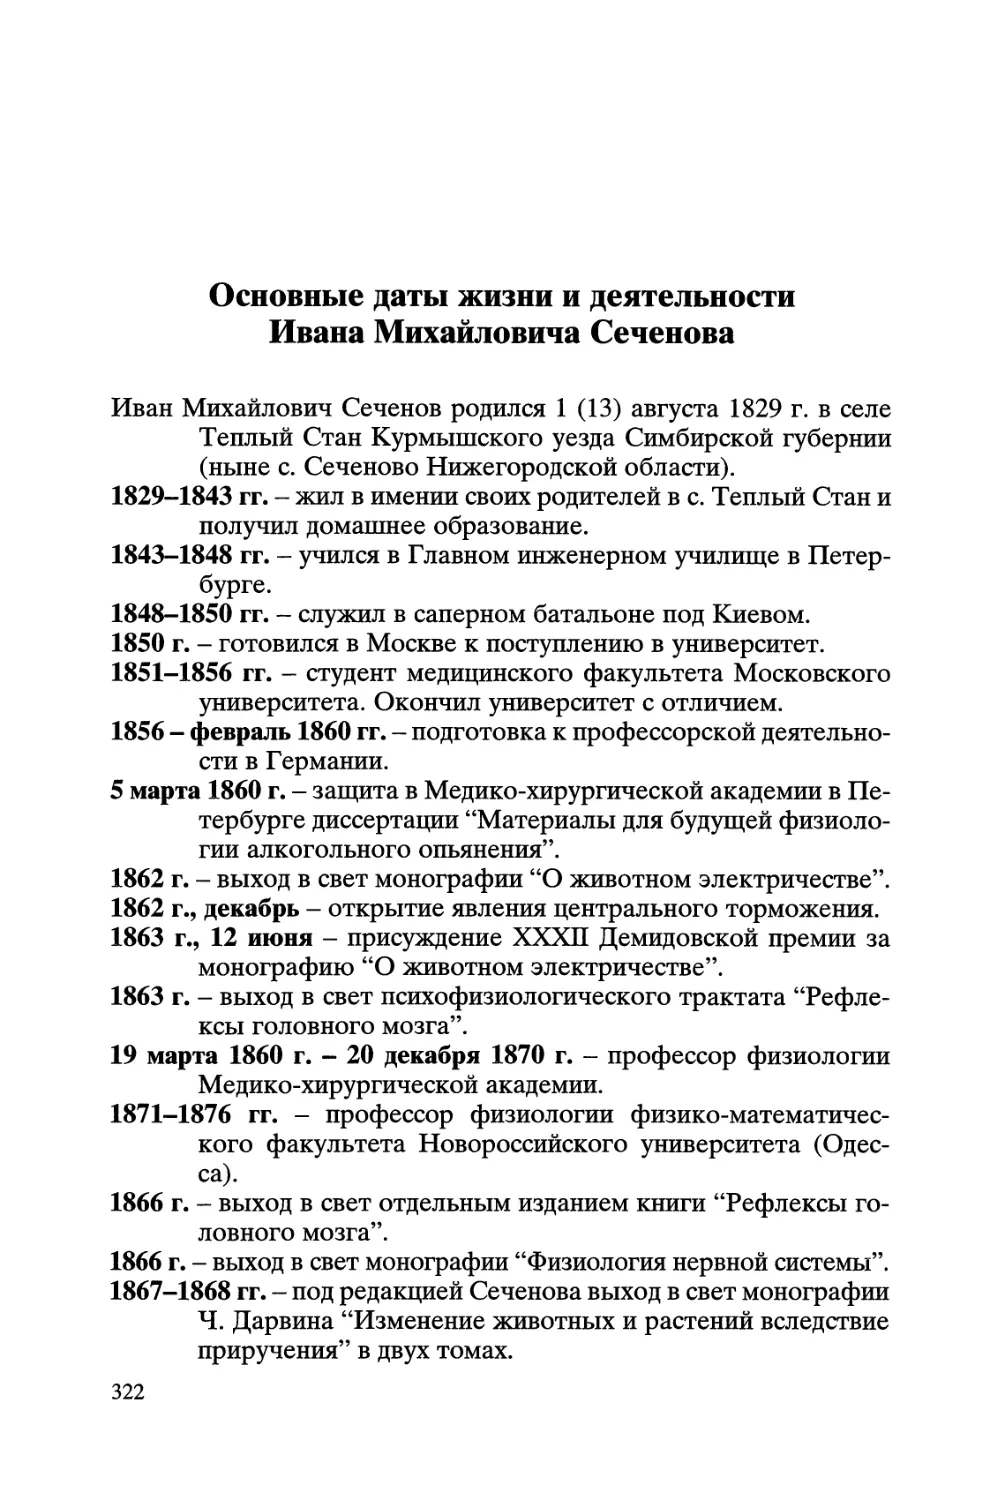 Основные даты жизни и деятельности И.М. Сеченова